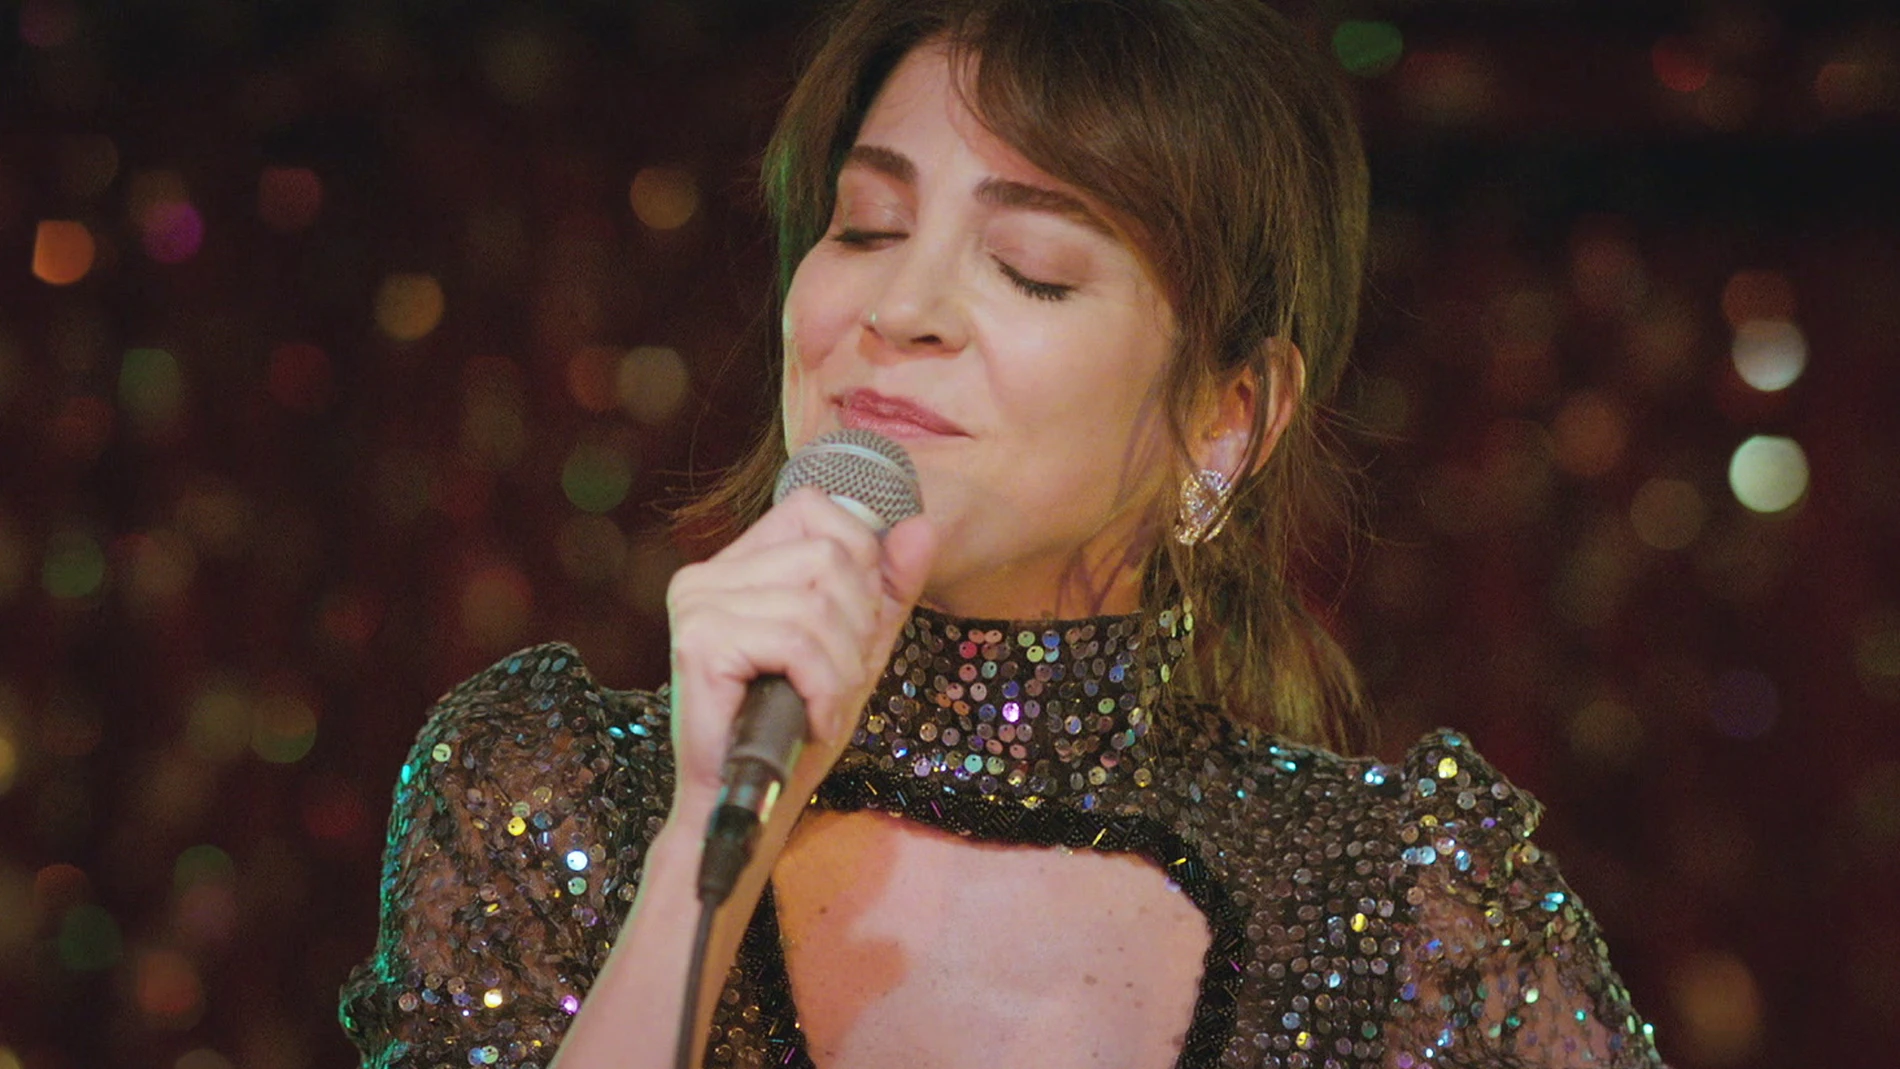 Ceyda canta en 'Mujer'